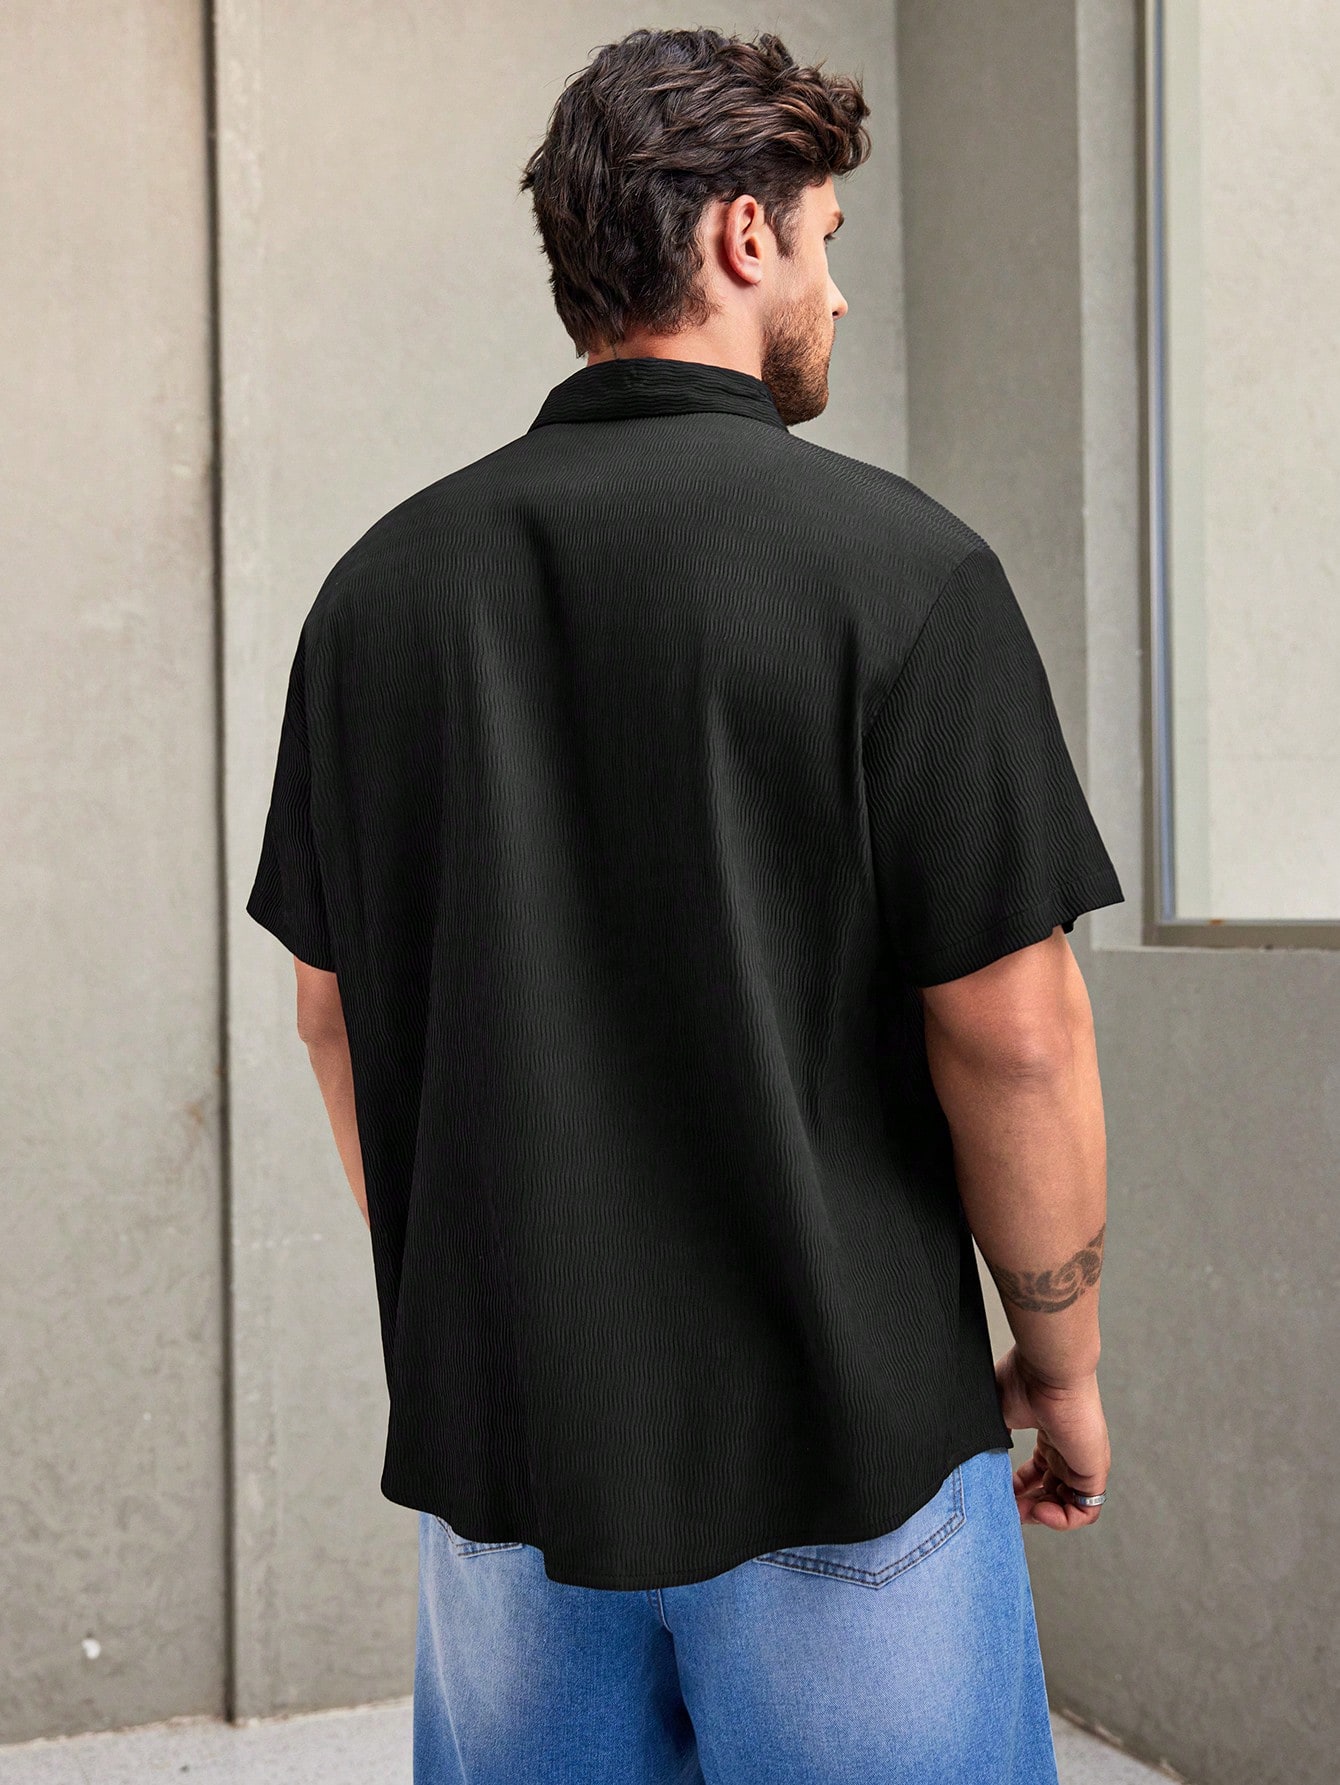 Мужская однотонная рубашка с коротким рукавом Manfinity Hypemode больших размеров, черный мужская повседневная модная джинсовая рубашка больших размеров manfinity hypemode синий